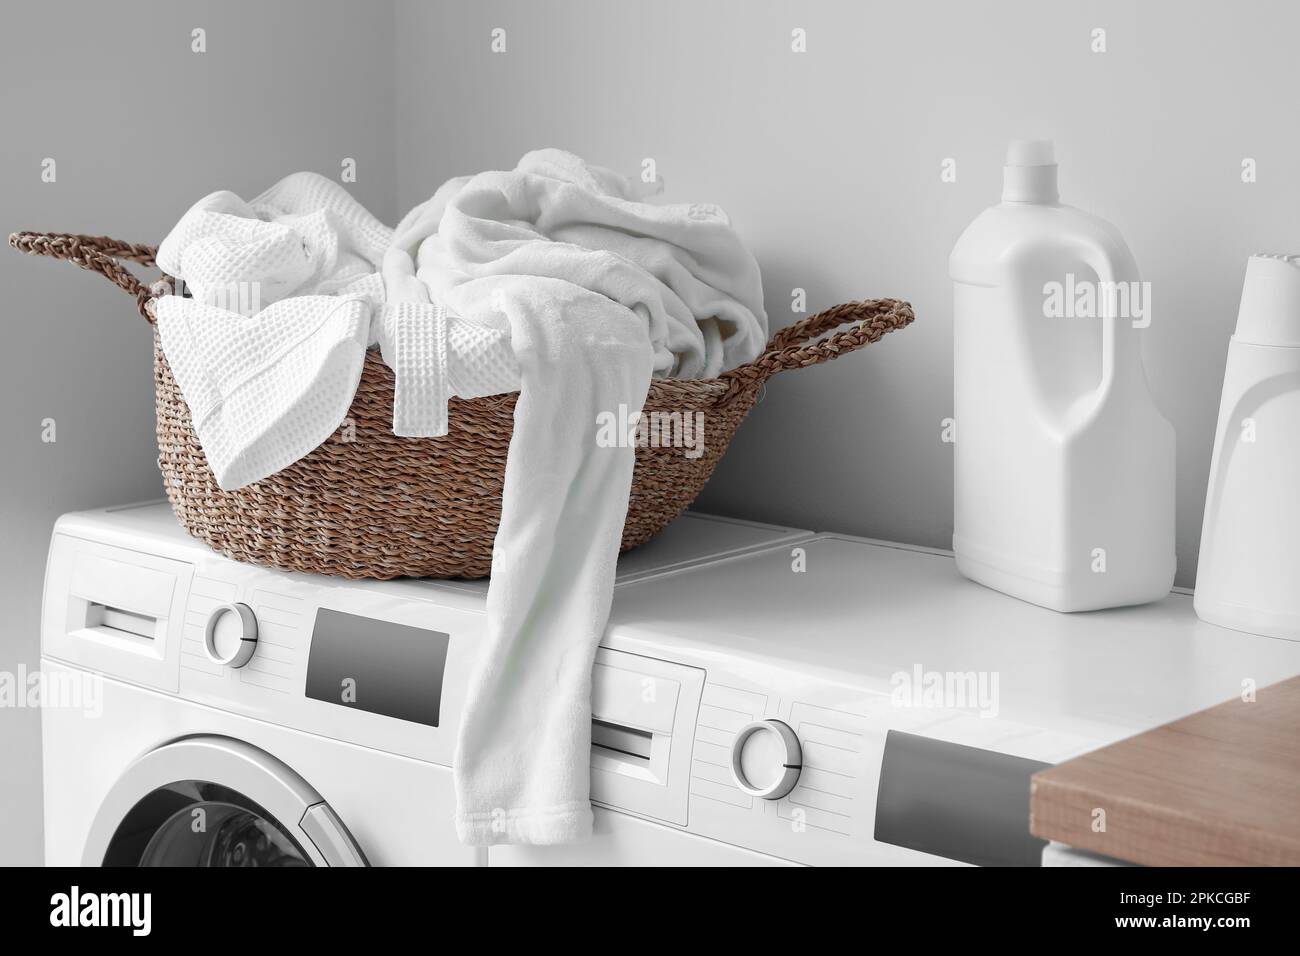 Montón de ropa sucia en una canasta de lavado, servicio de